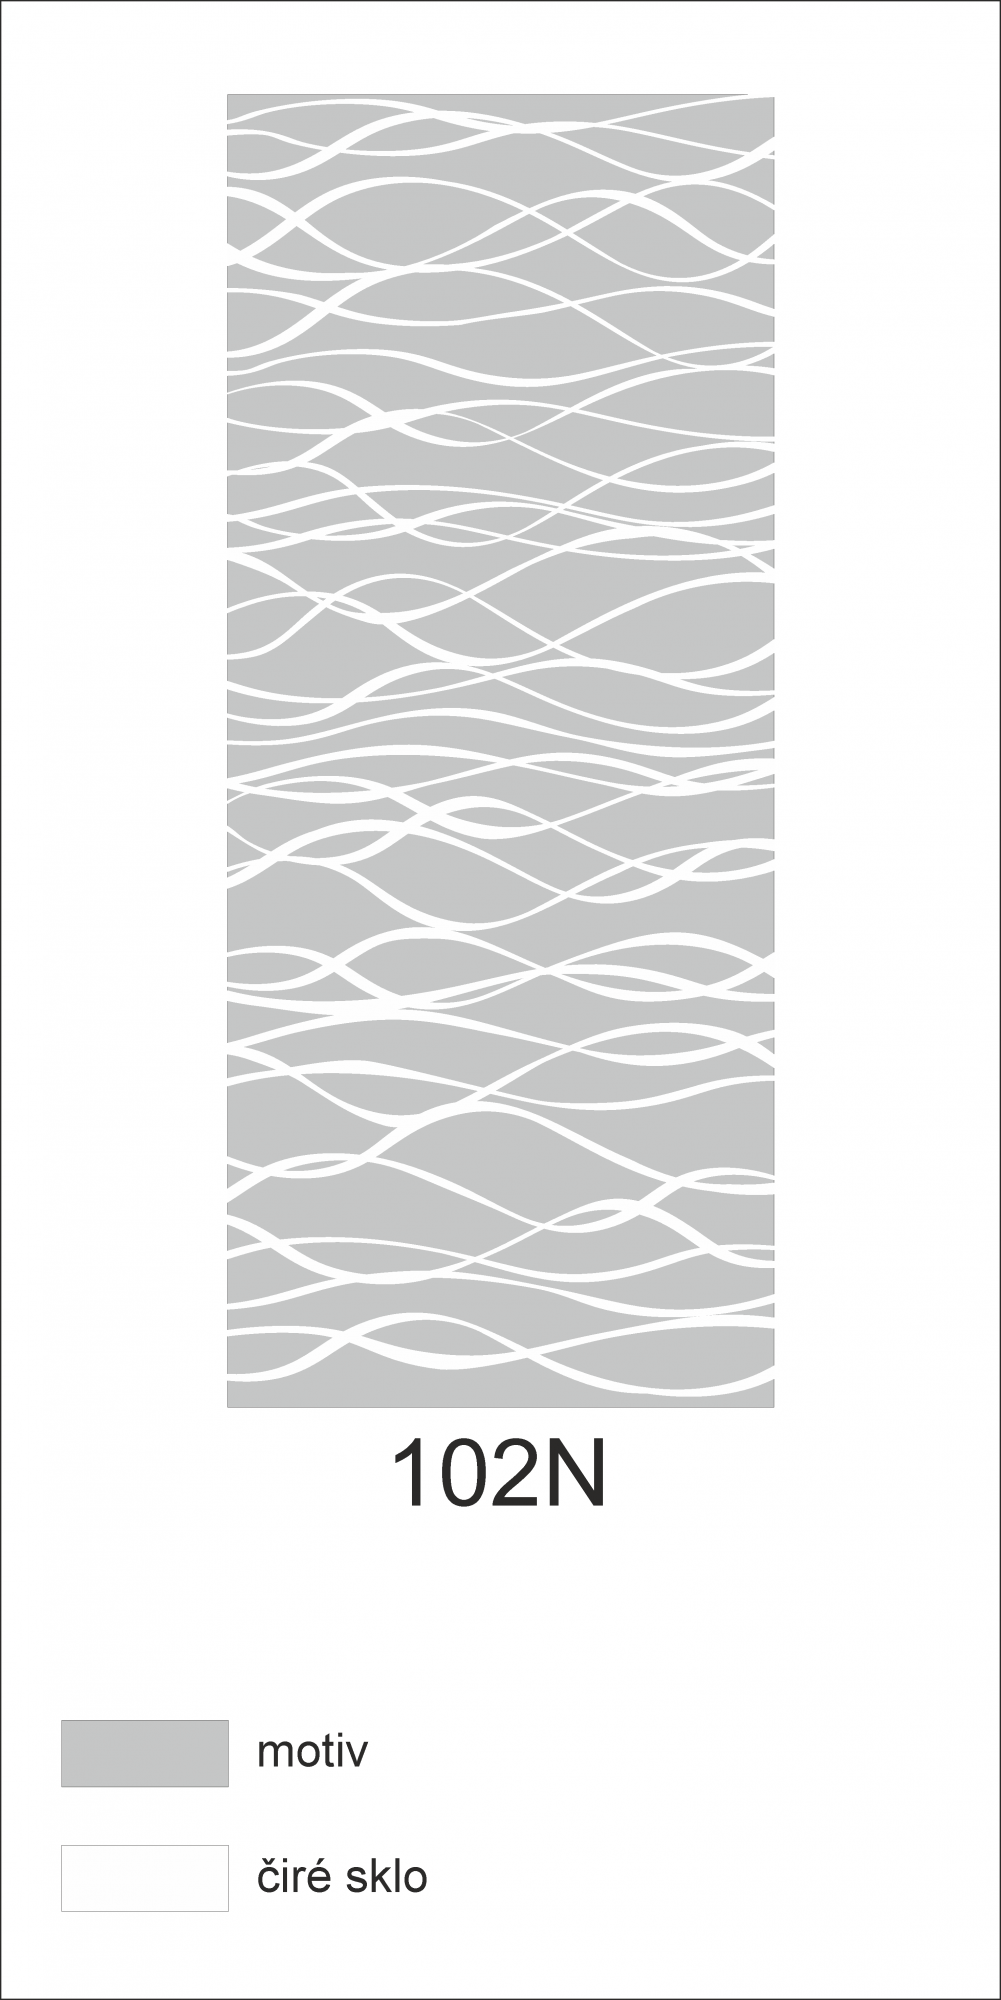 Možný motiv na skleněných dveřích nebo skleněných stěnách 102N - vlny